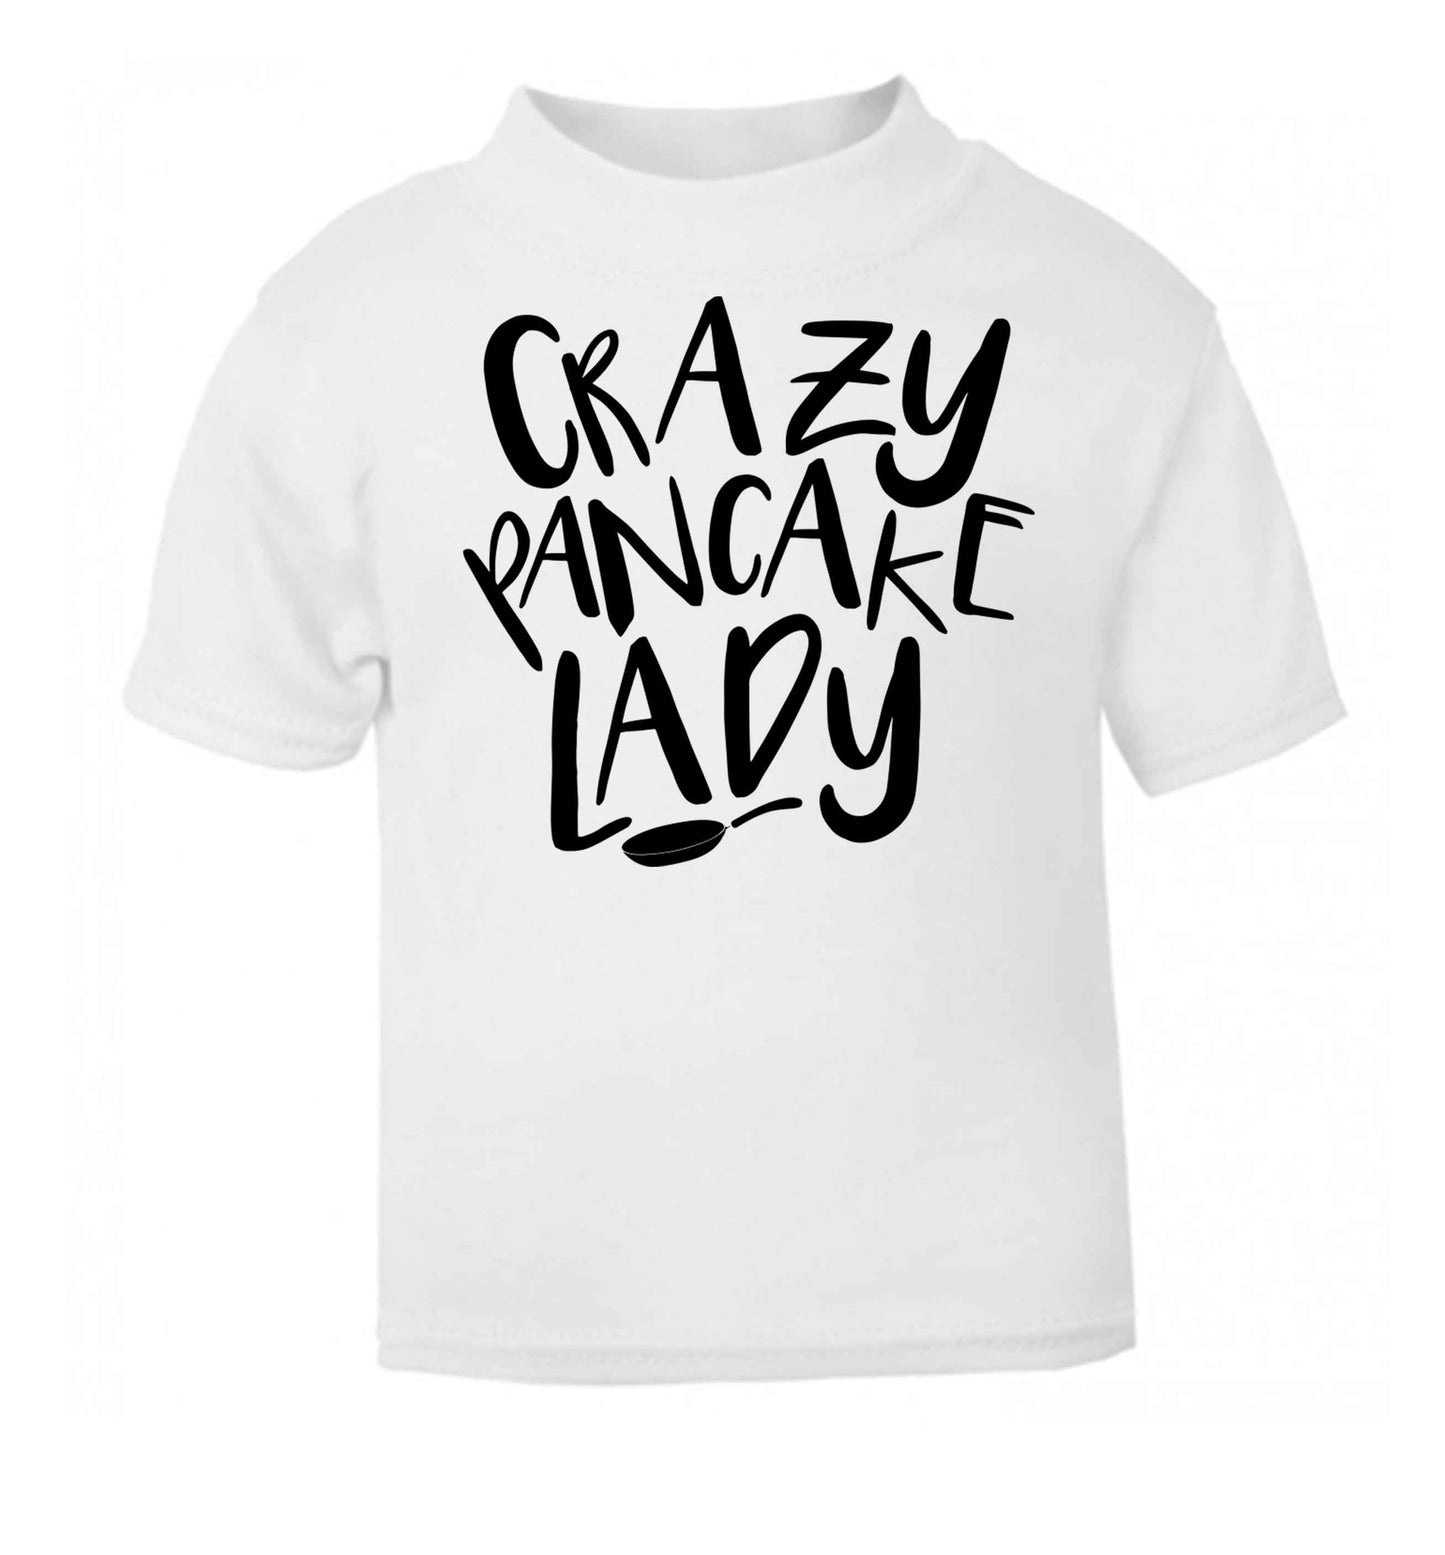 Crazy pancake lady white baby toddler Tshirt 2 Years